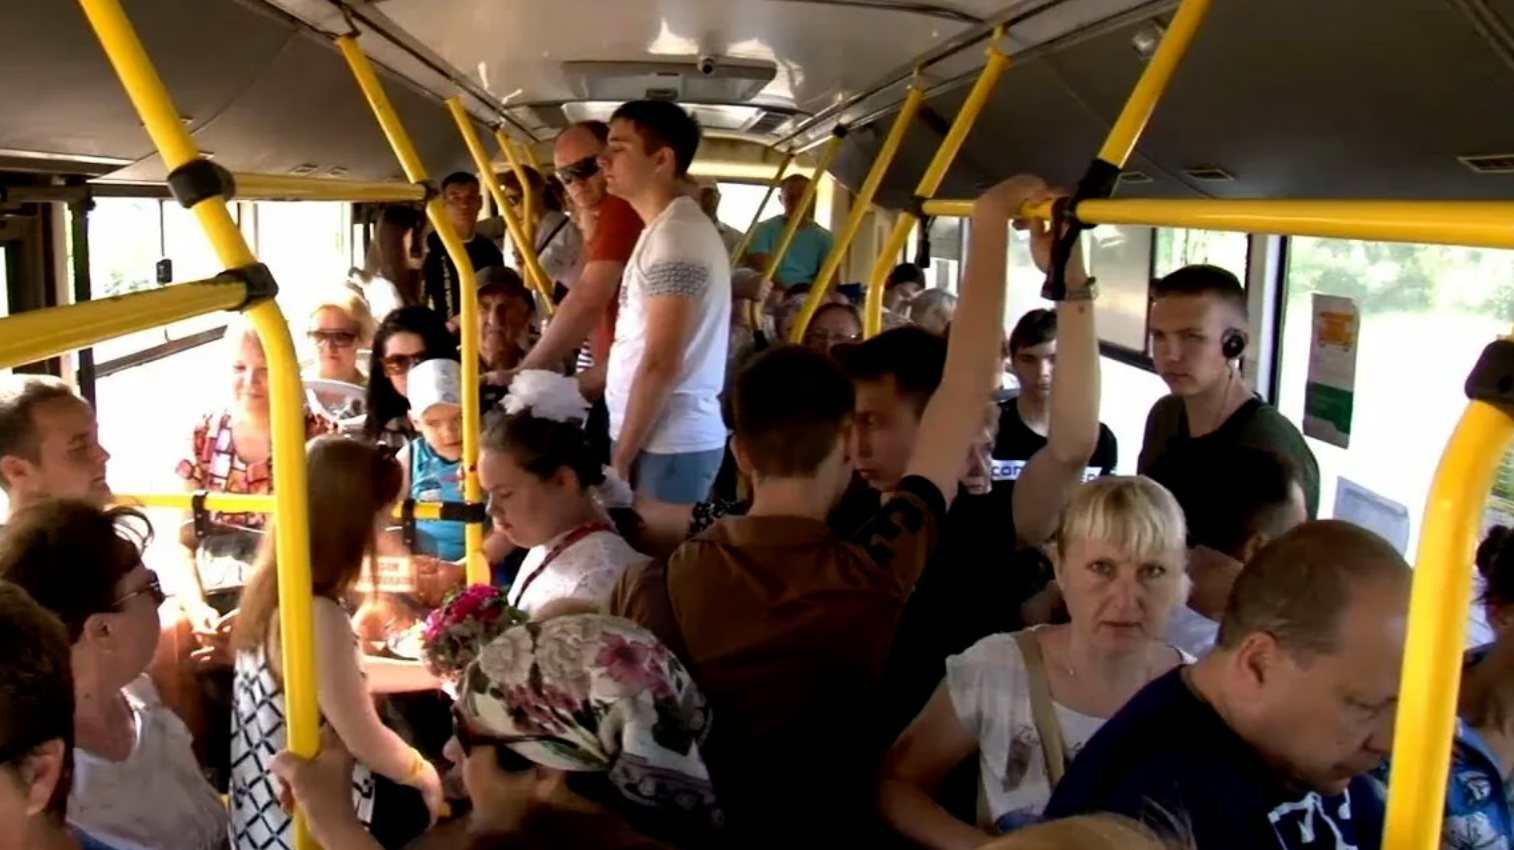 М автобус в час. Толпа людей в автобусе. Автобус внутри с людьми. Толба люднц в автобему. Много людей в автобусе.